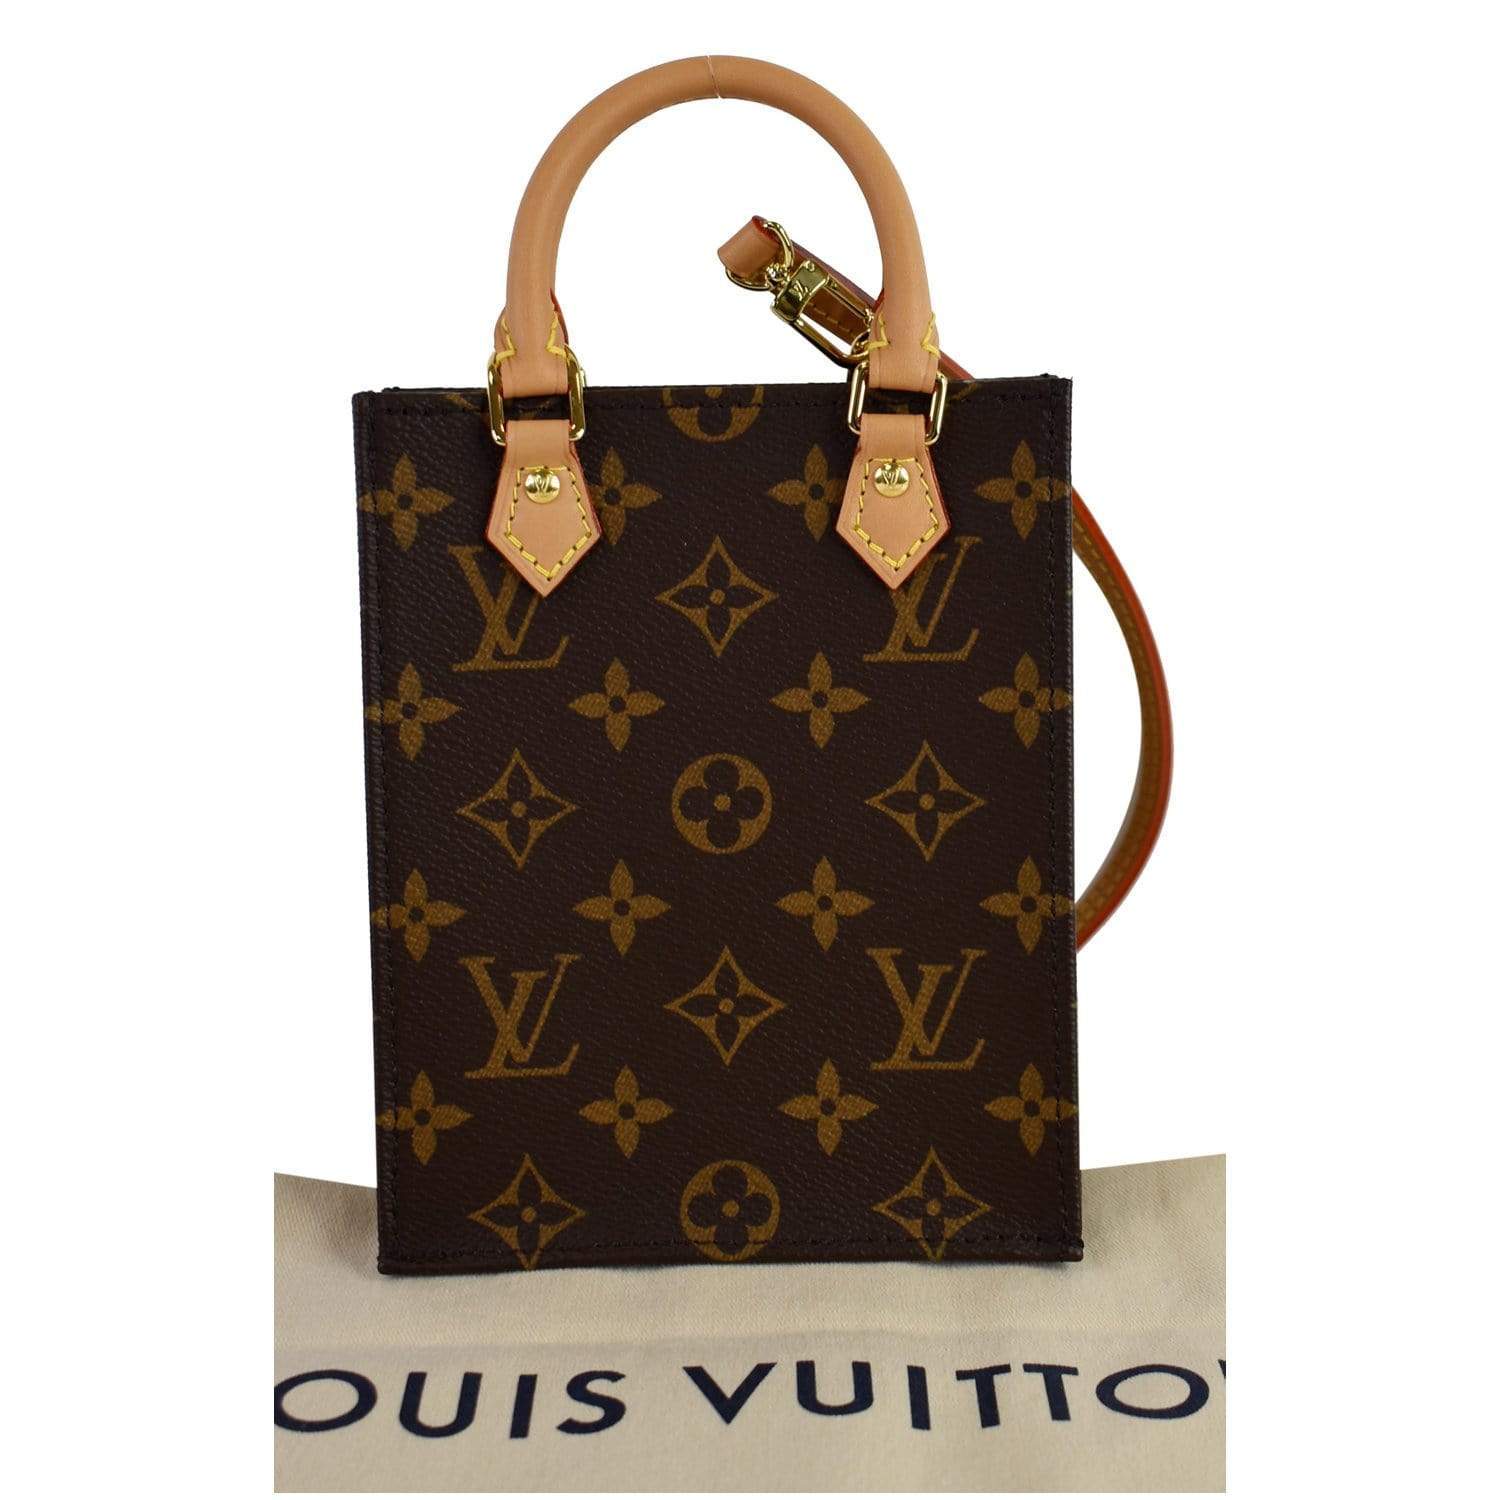 Louis Vuitton Petit Sac Plat Bag Denim Since 1854 – Coco Approved Studio